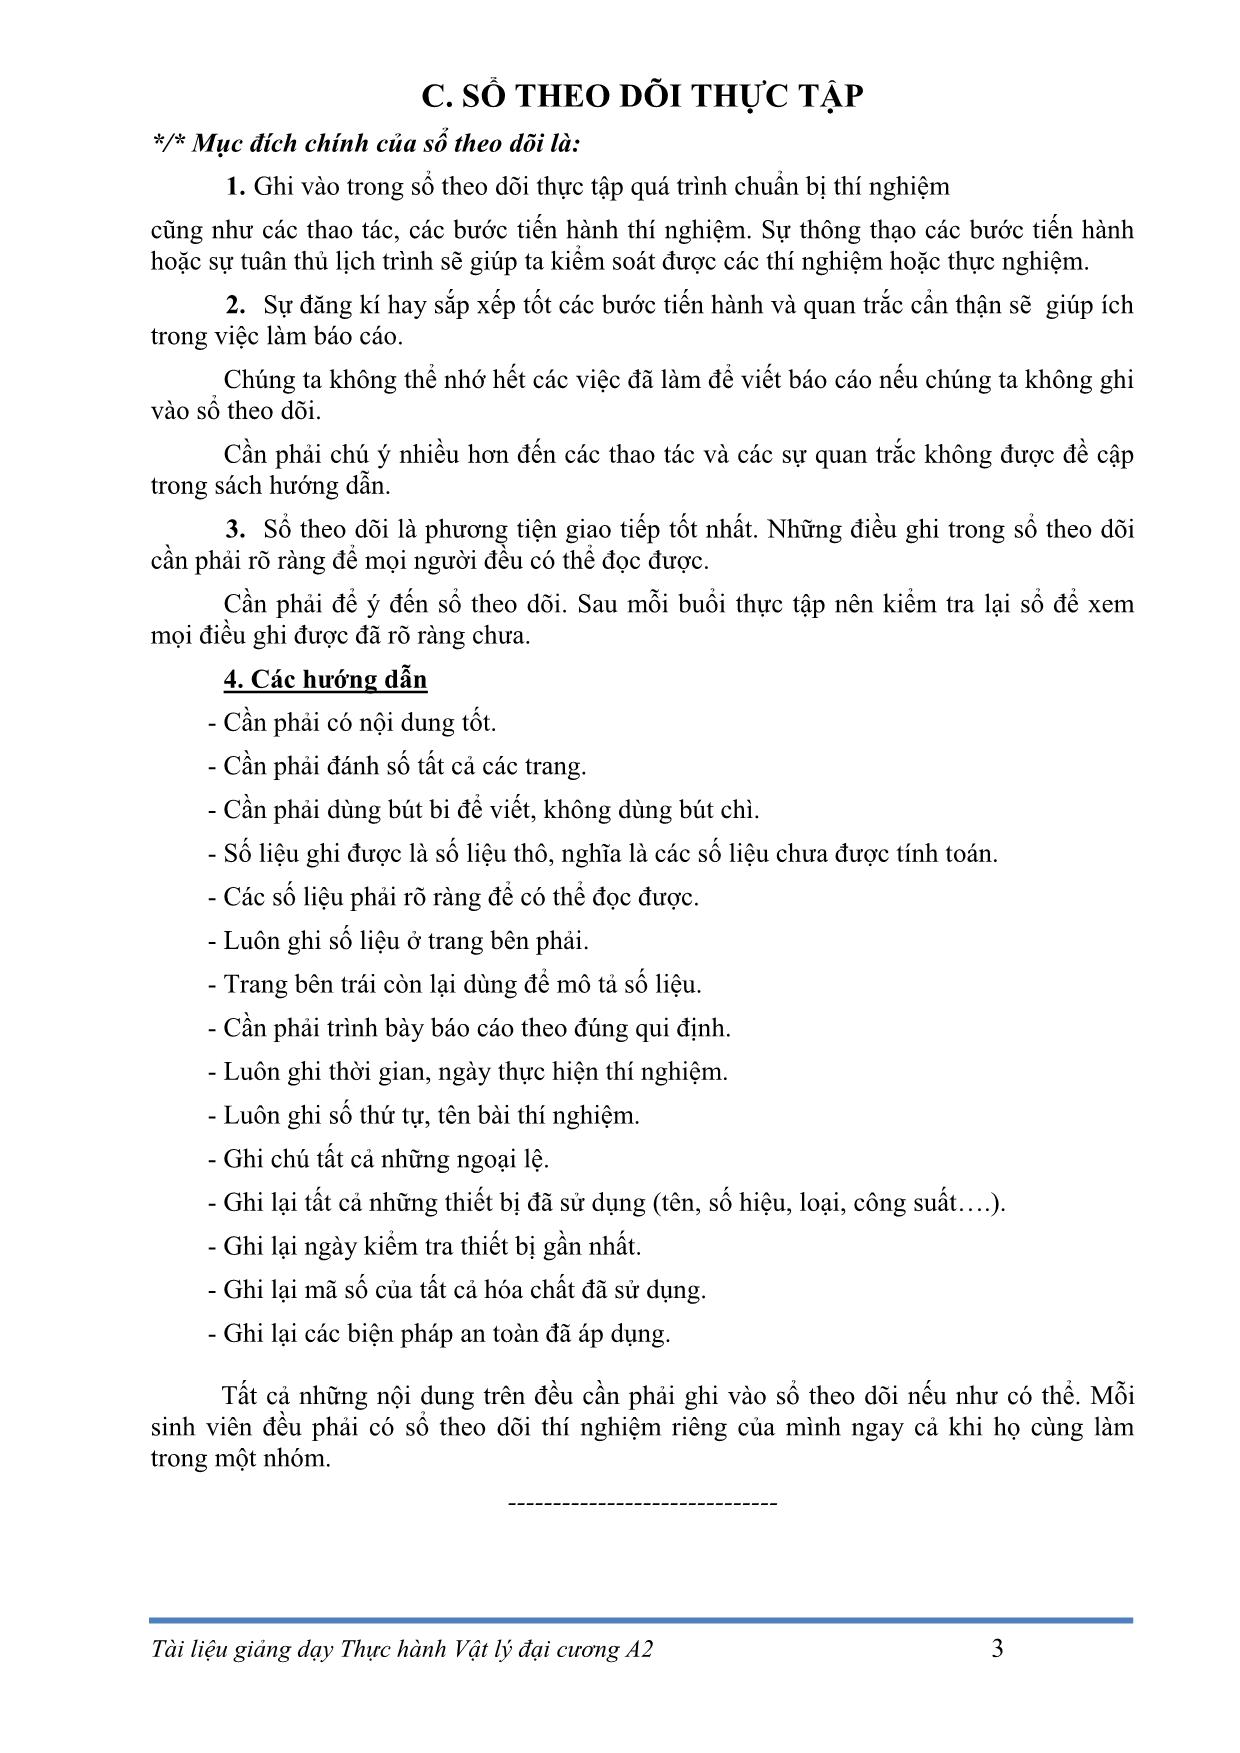 Giáo trình Vật lý đại cương A2 - Nguyễn Văn Sáu trang 6